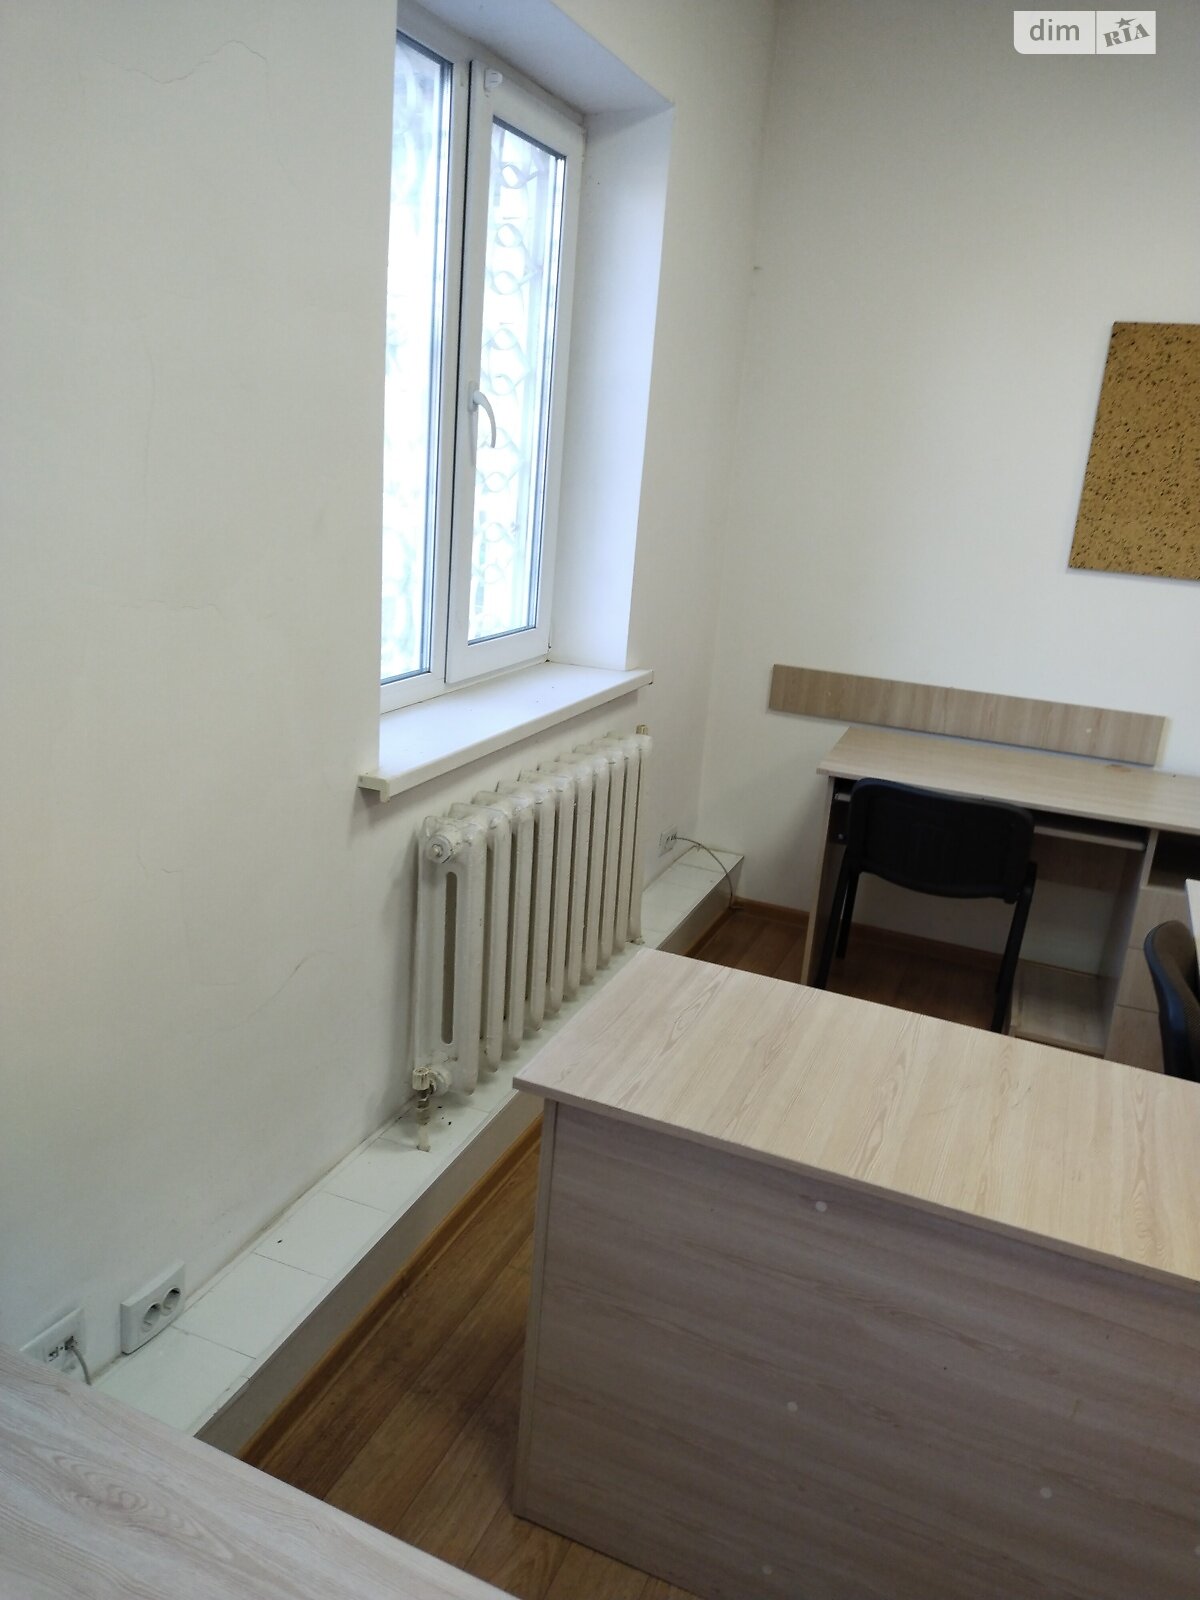 Оренда офісного приміщення в Вінниці, Індустріальний 1-й провулок, приміщень - 7, поверх - 1 фото 1